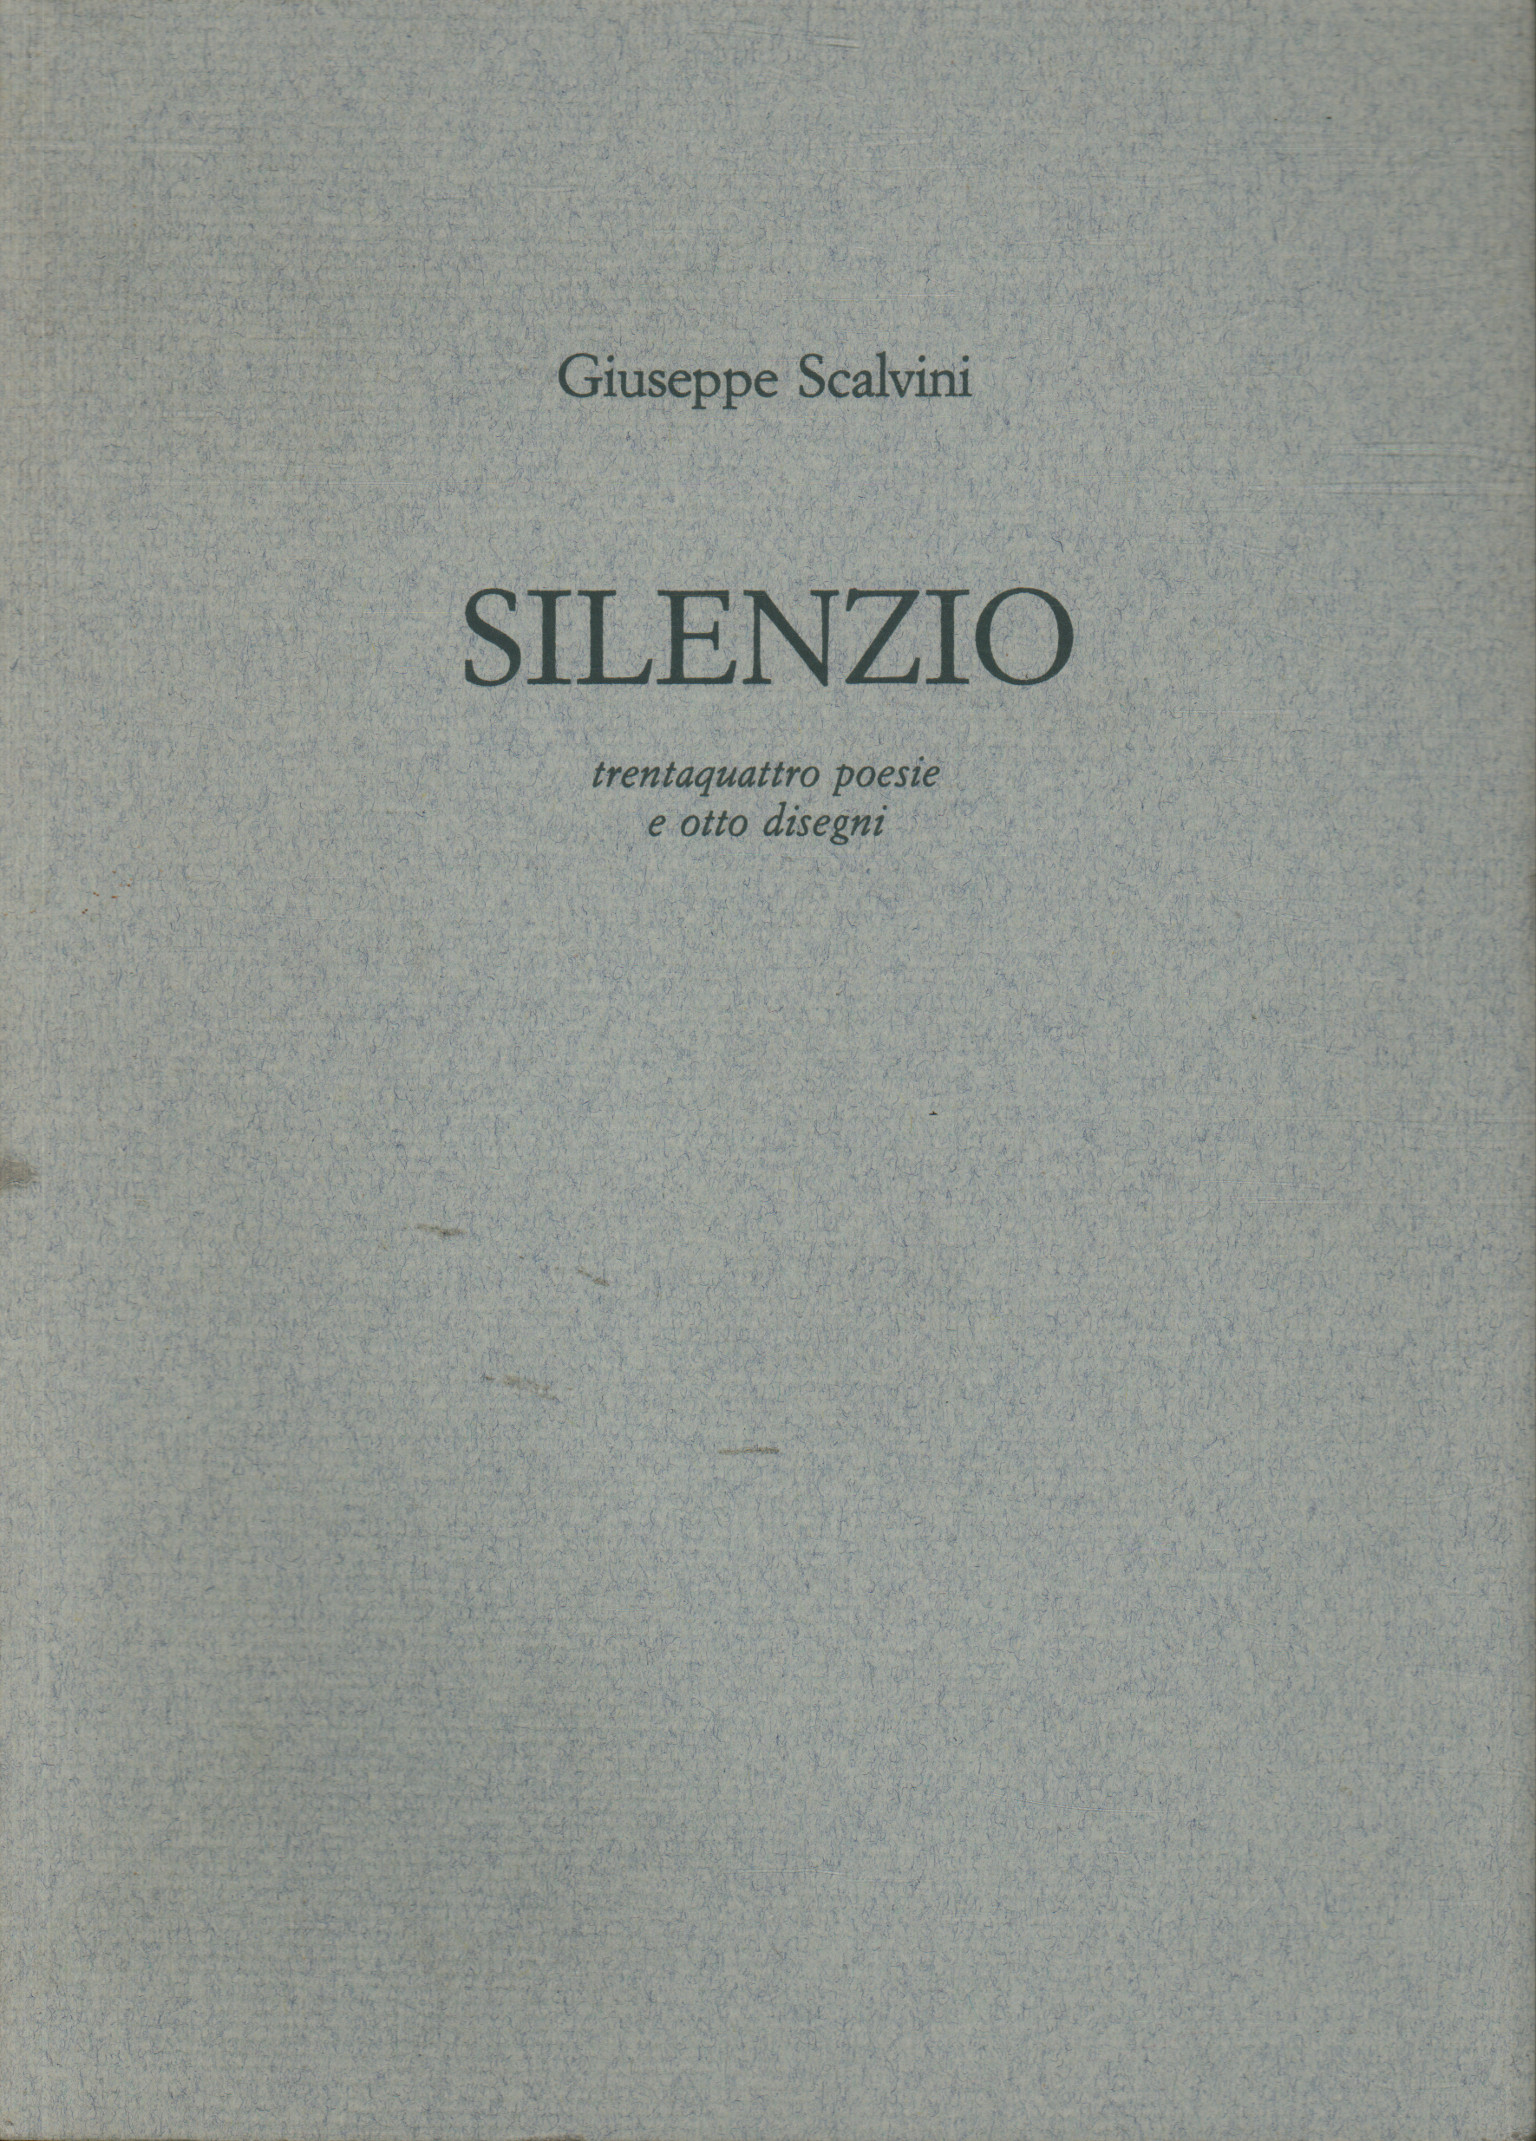 Silenzio, Giuseppe Scalvini